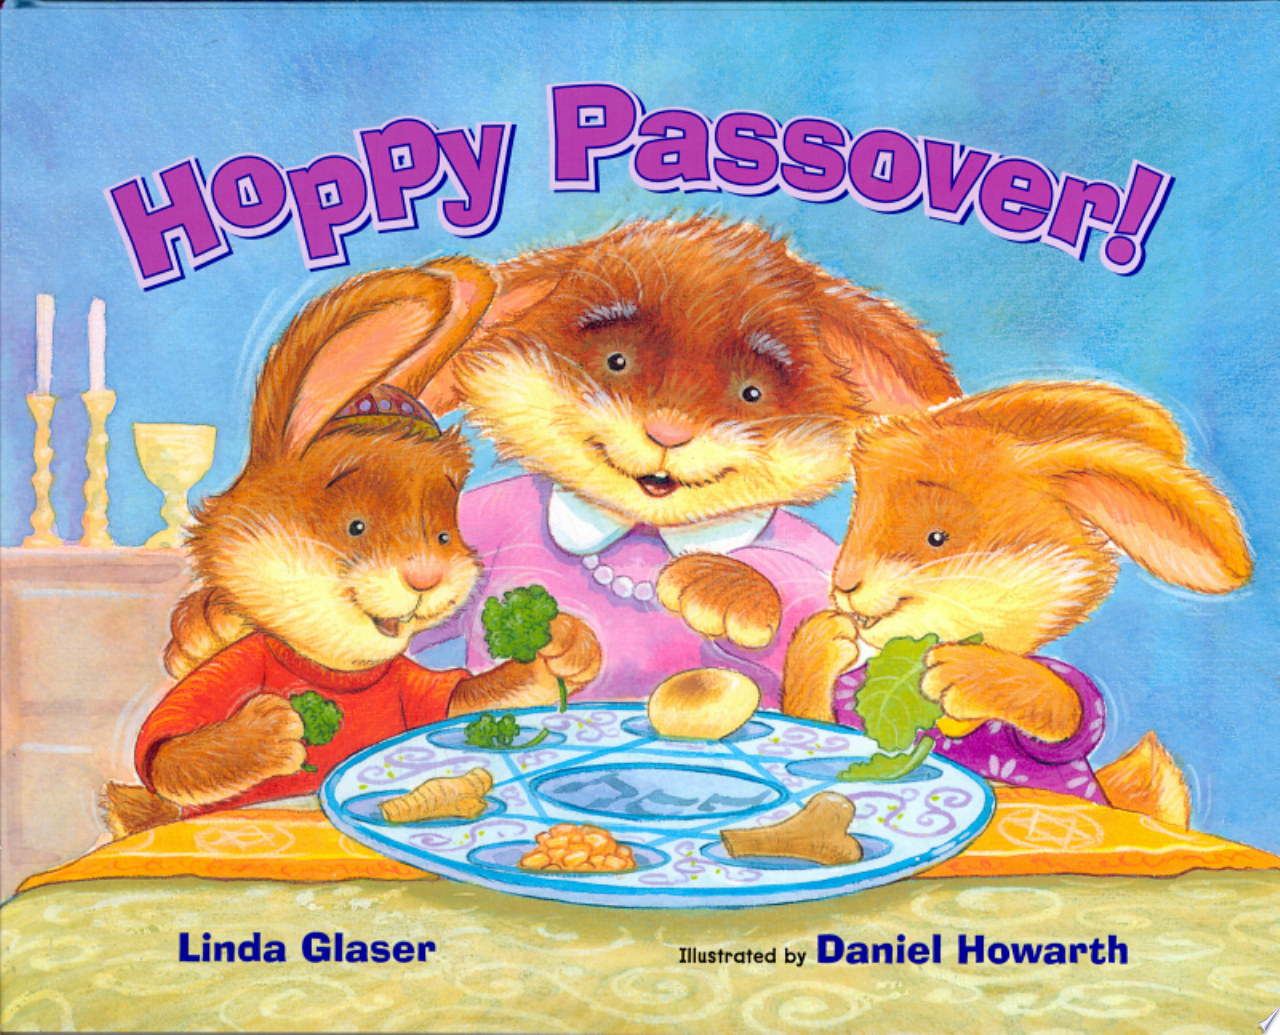 Image for "Hoppy Passover!"